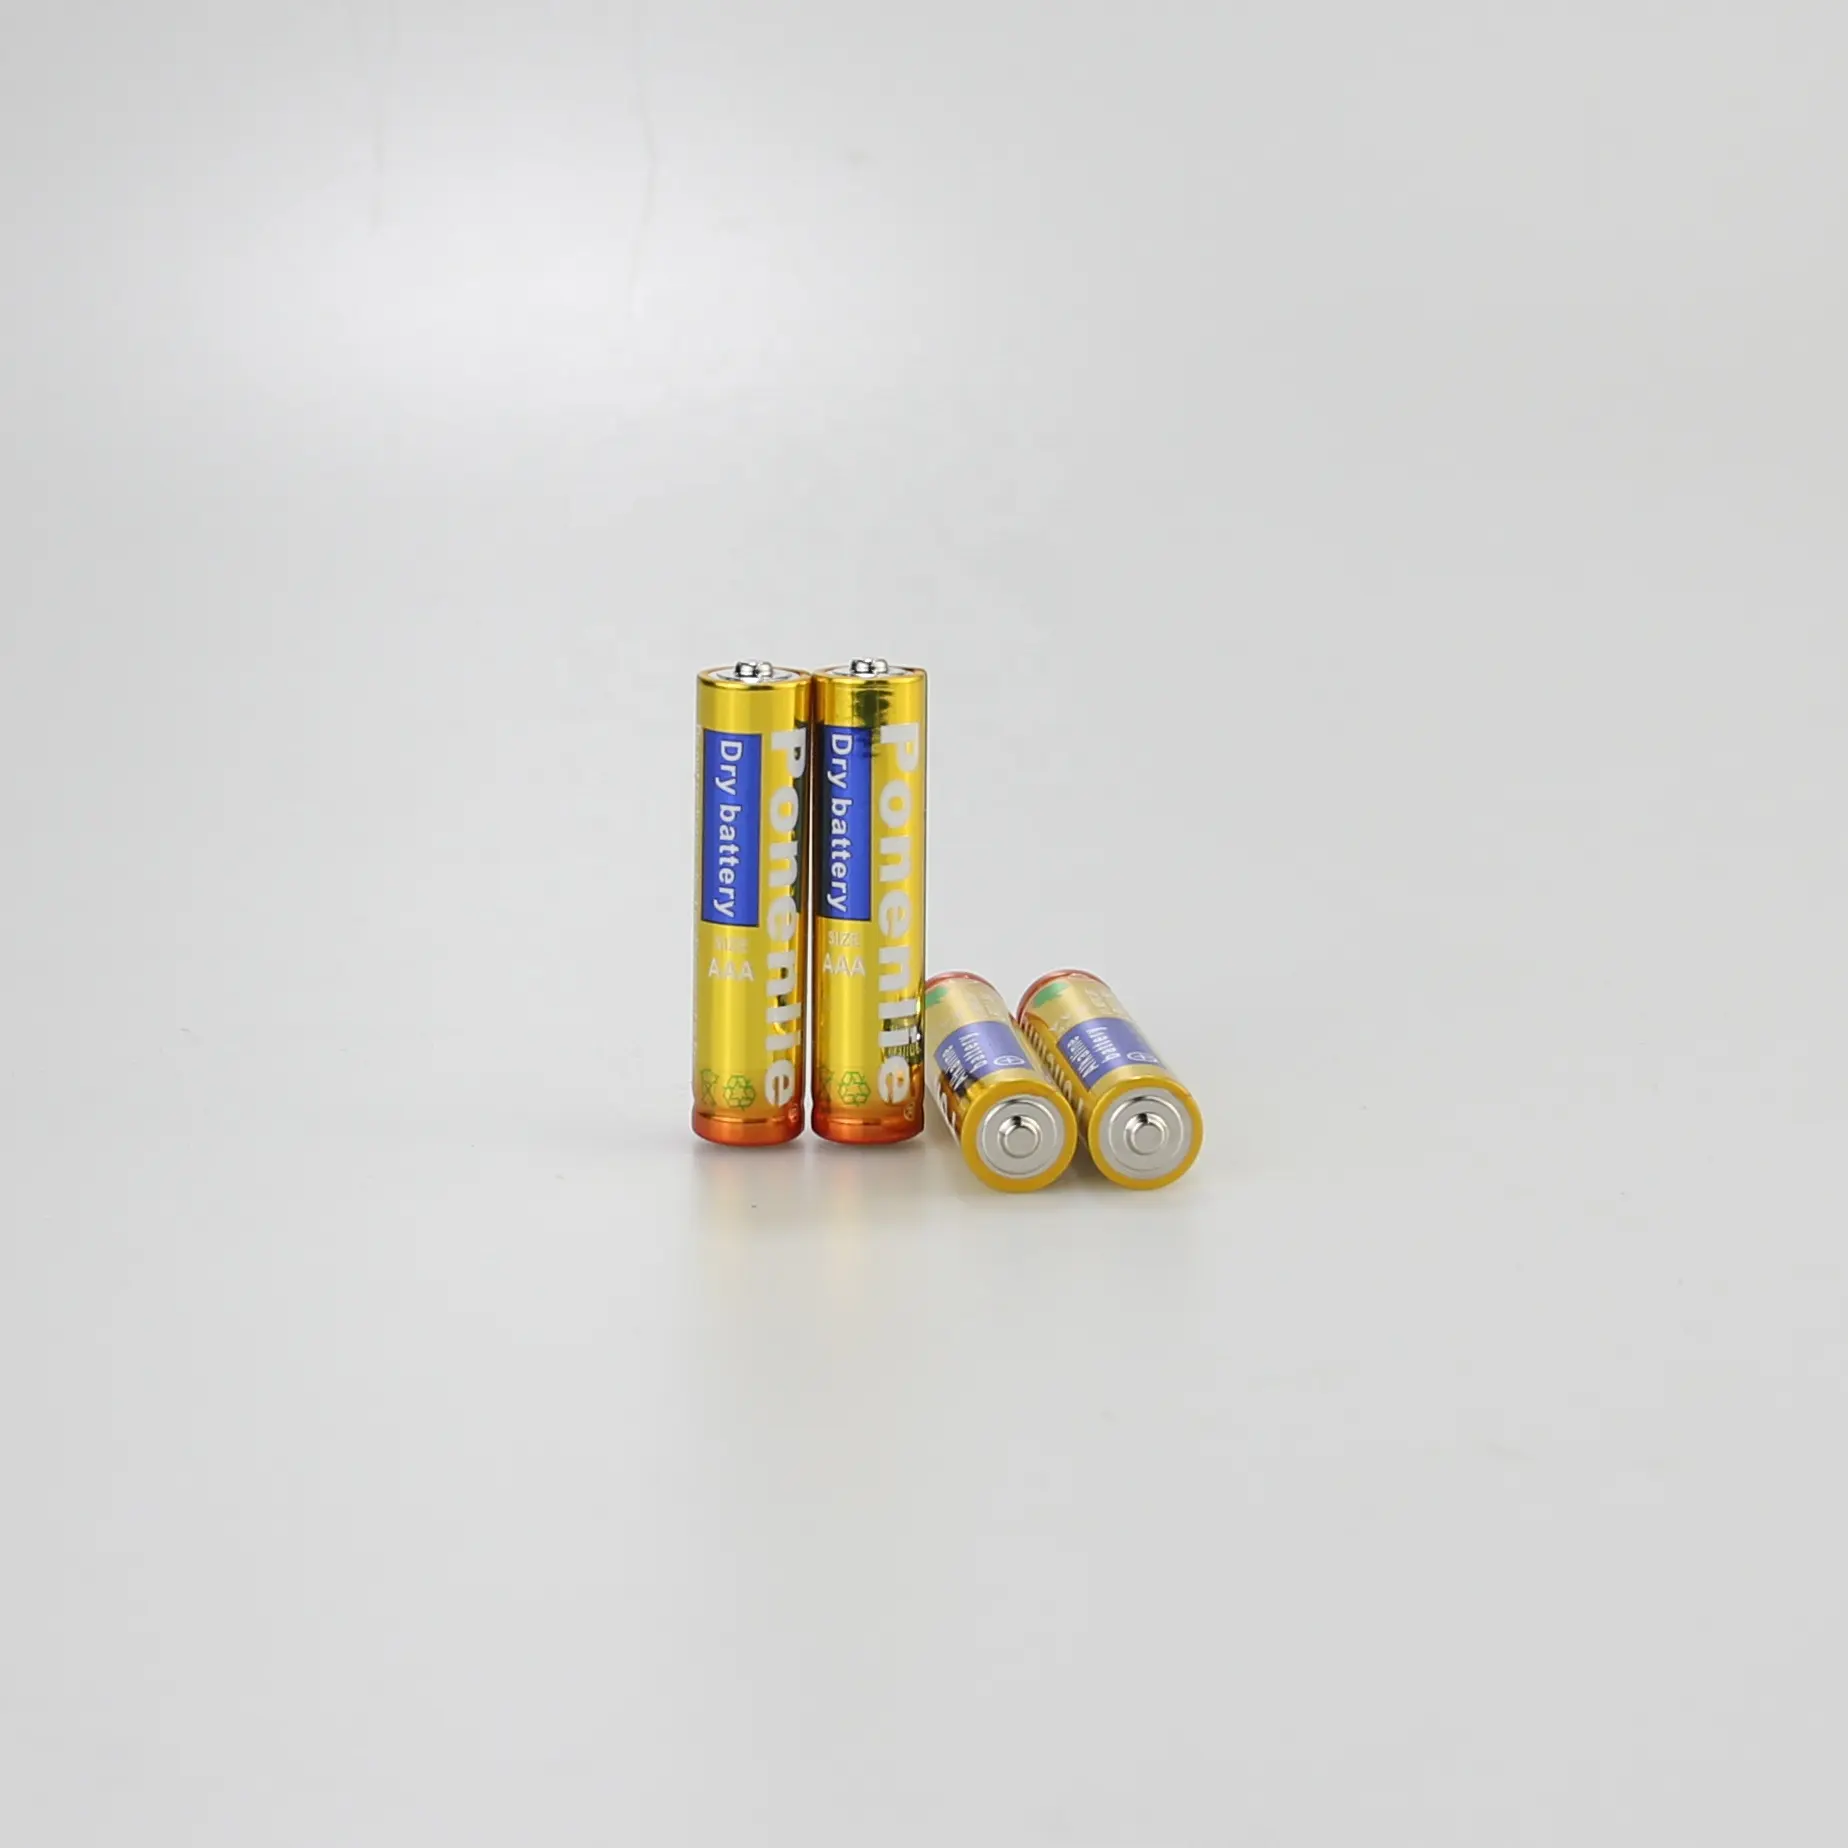 Uholan venta al por mayor LR6 alcalina 5 batería AA 1,5 V batería alcalina bajo precio juguetes ratón inalámbrico